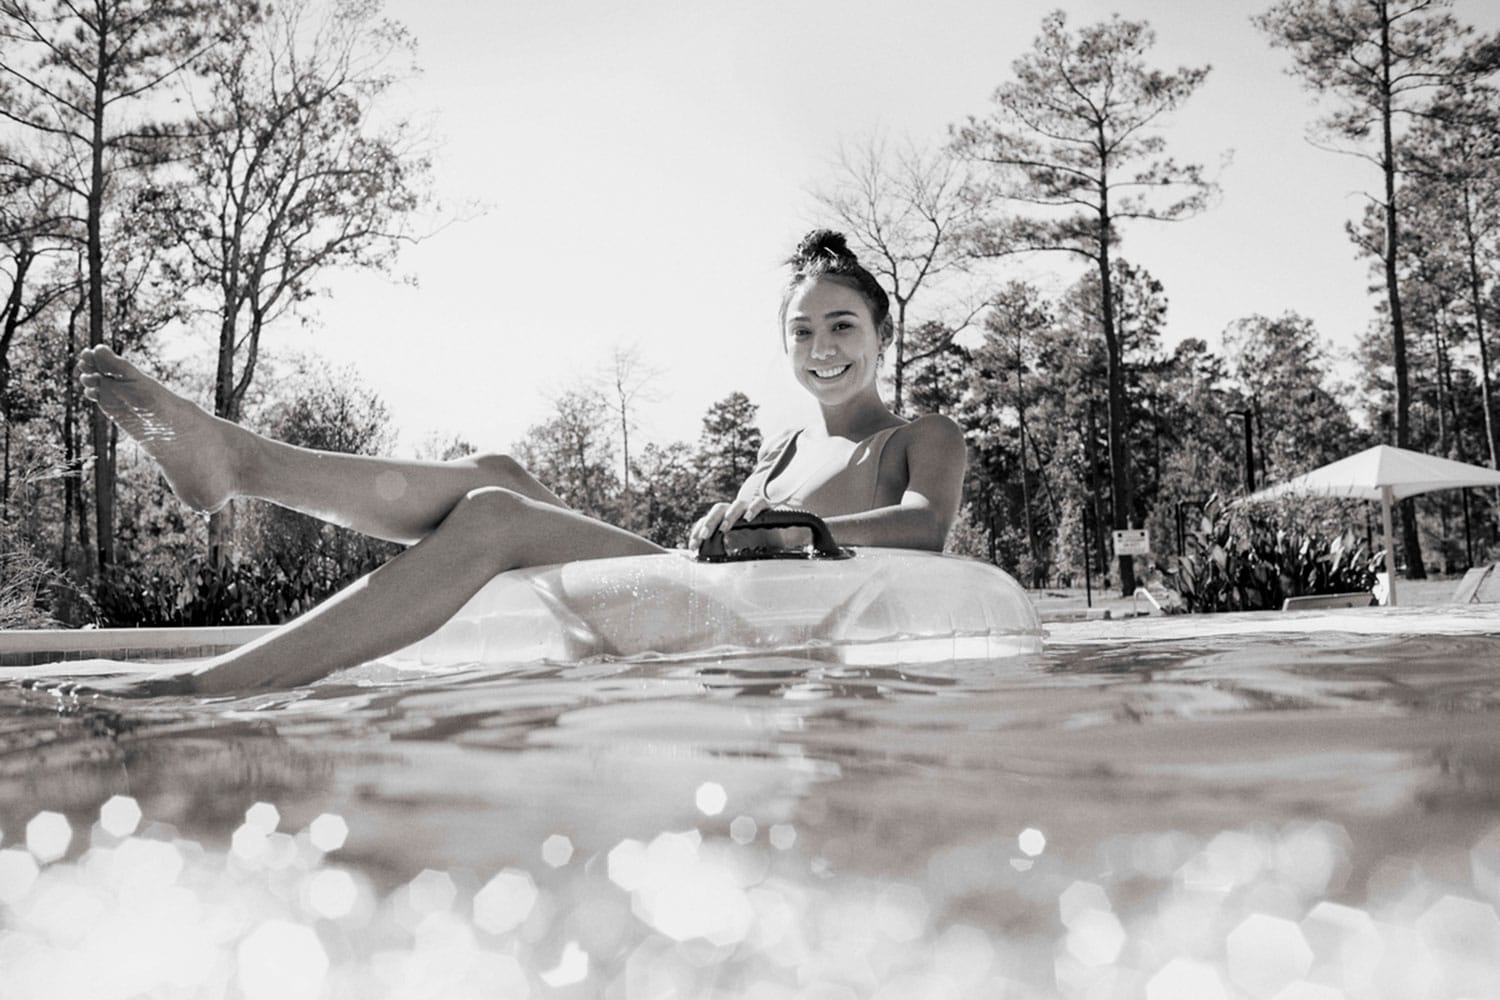 Girl on inner tube in pool